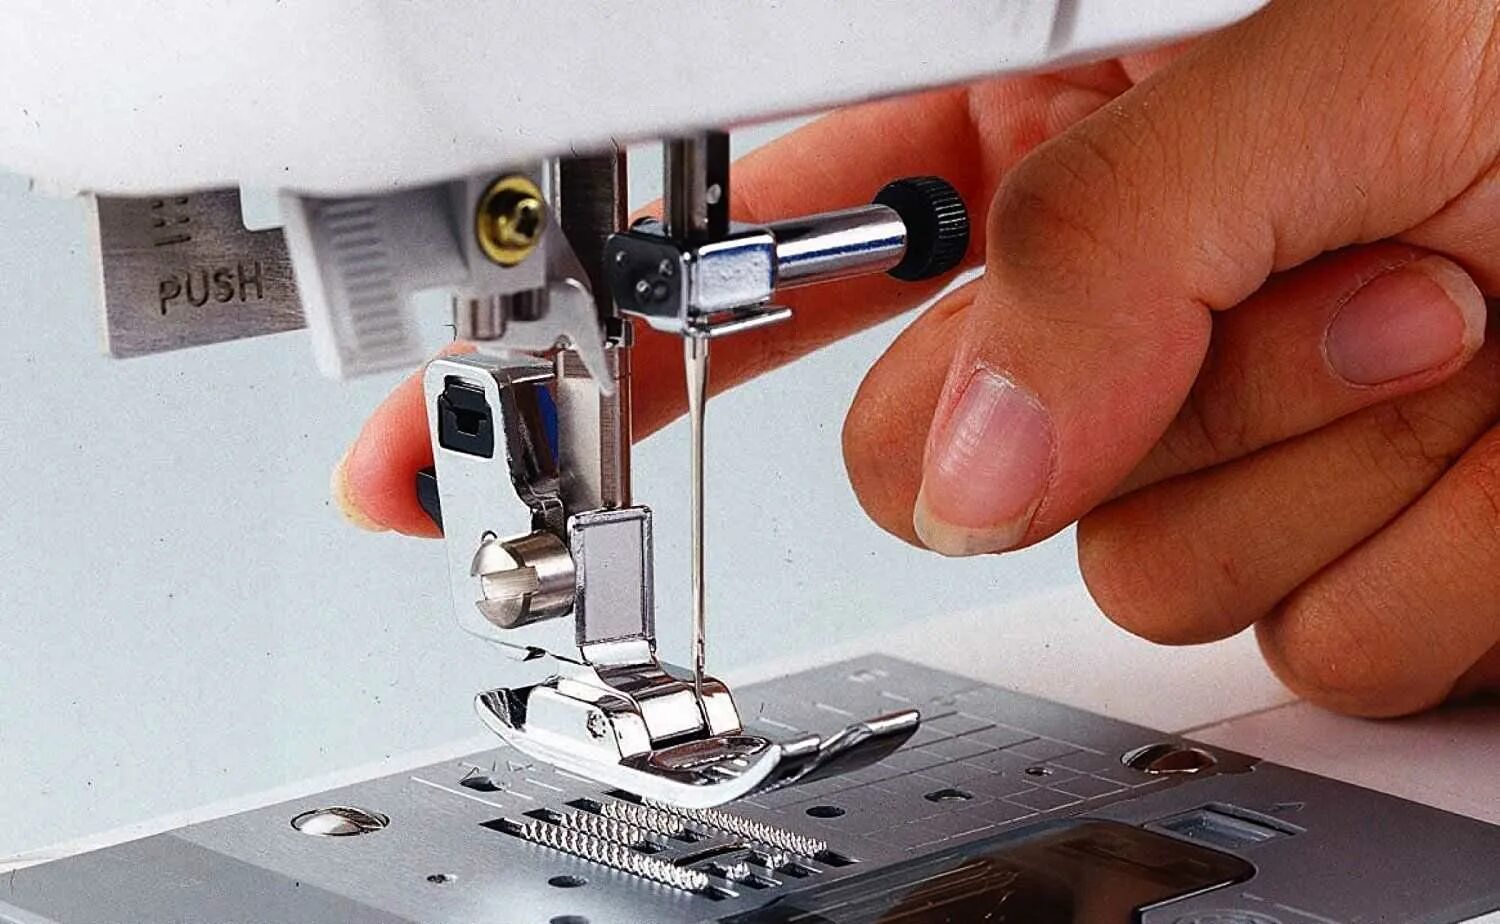 Обслуживание швейной машинки. Починка швейной машинки. Швейная машинка сломалась. Швейные приспособления для швейных машинок. Мастер по швейным машинам.